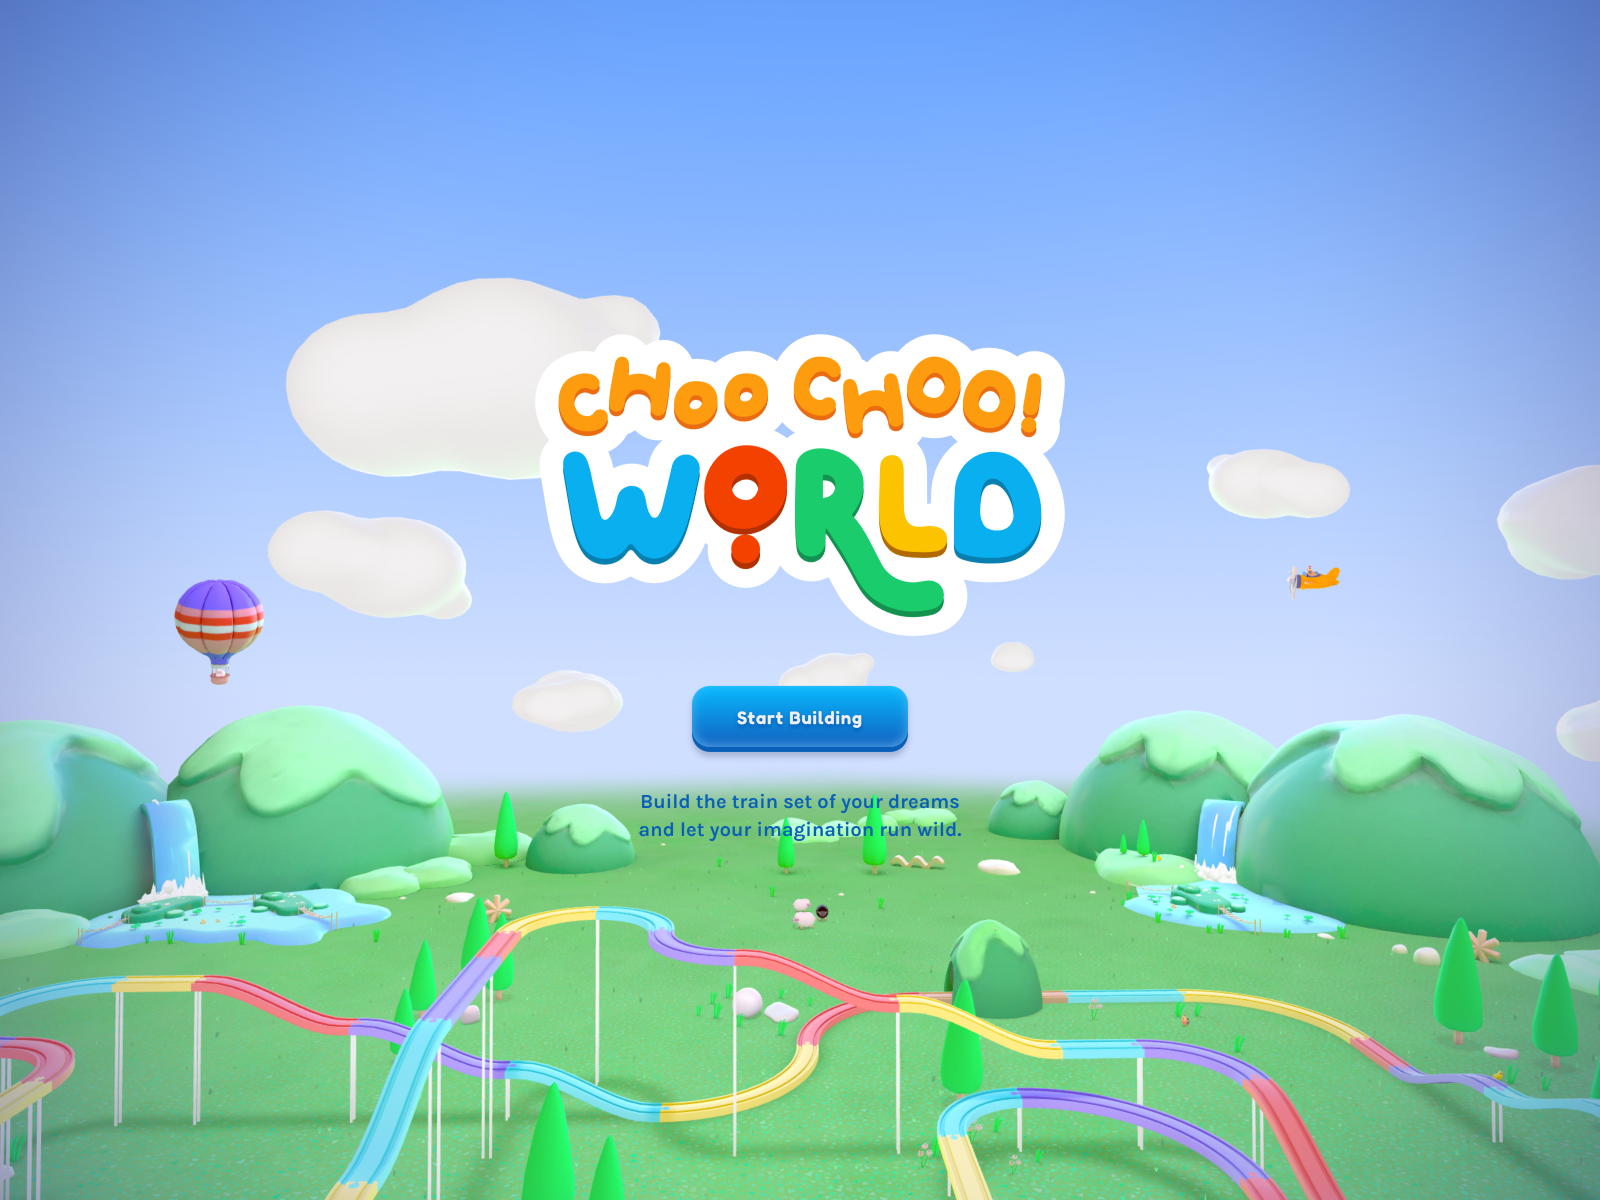 Choo-Choo World